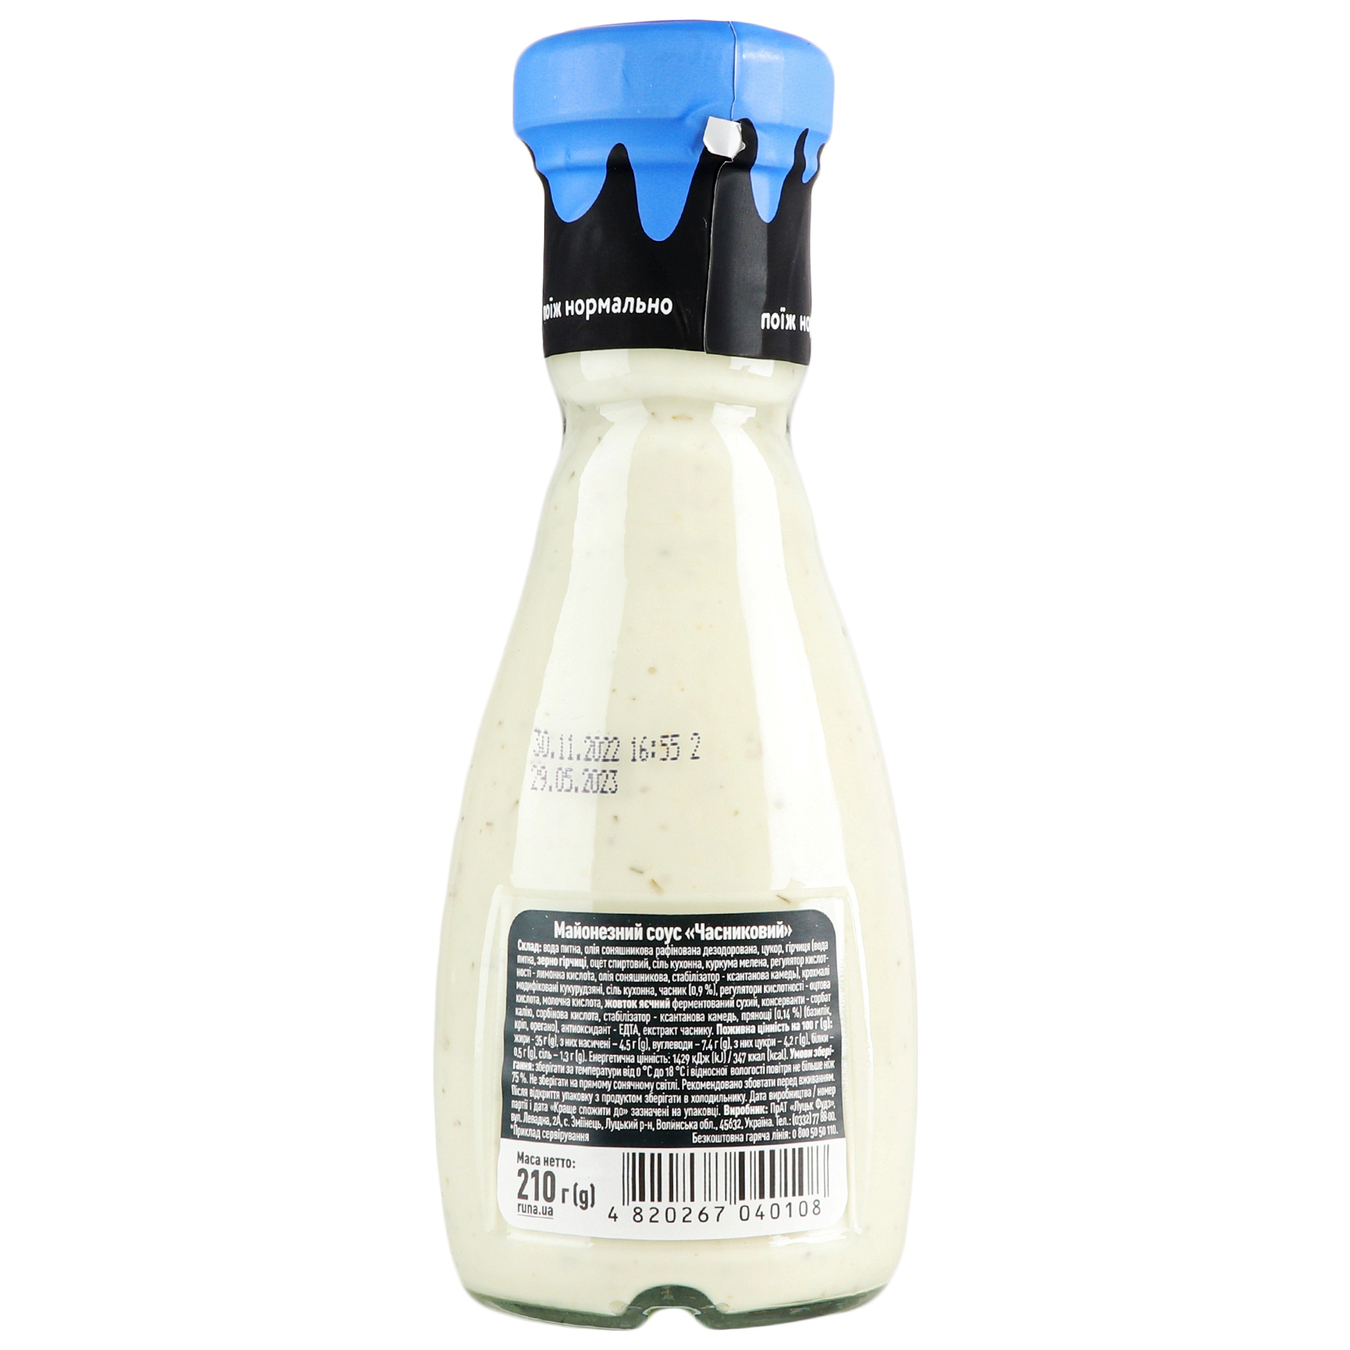 Runa mayonnaise garlic sauce sterilized 235g 3